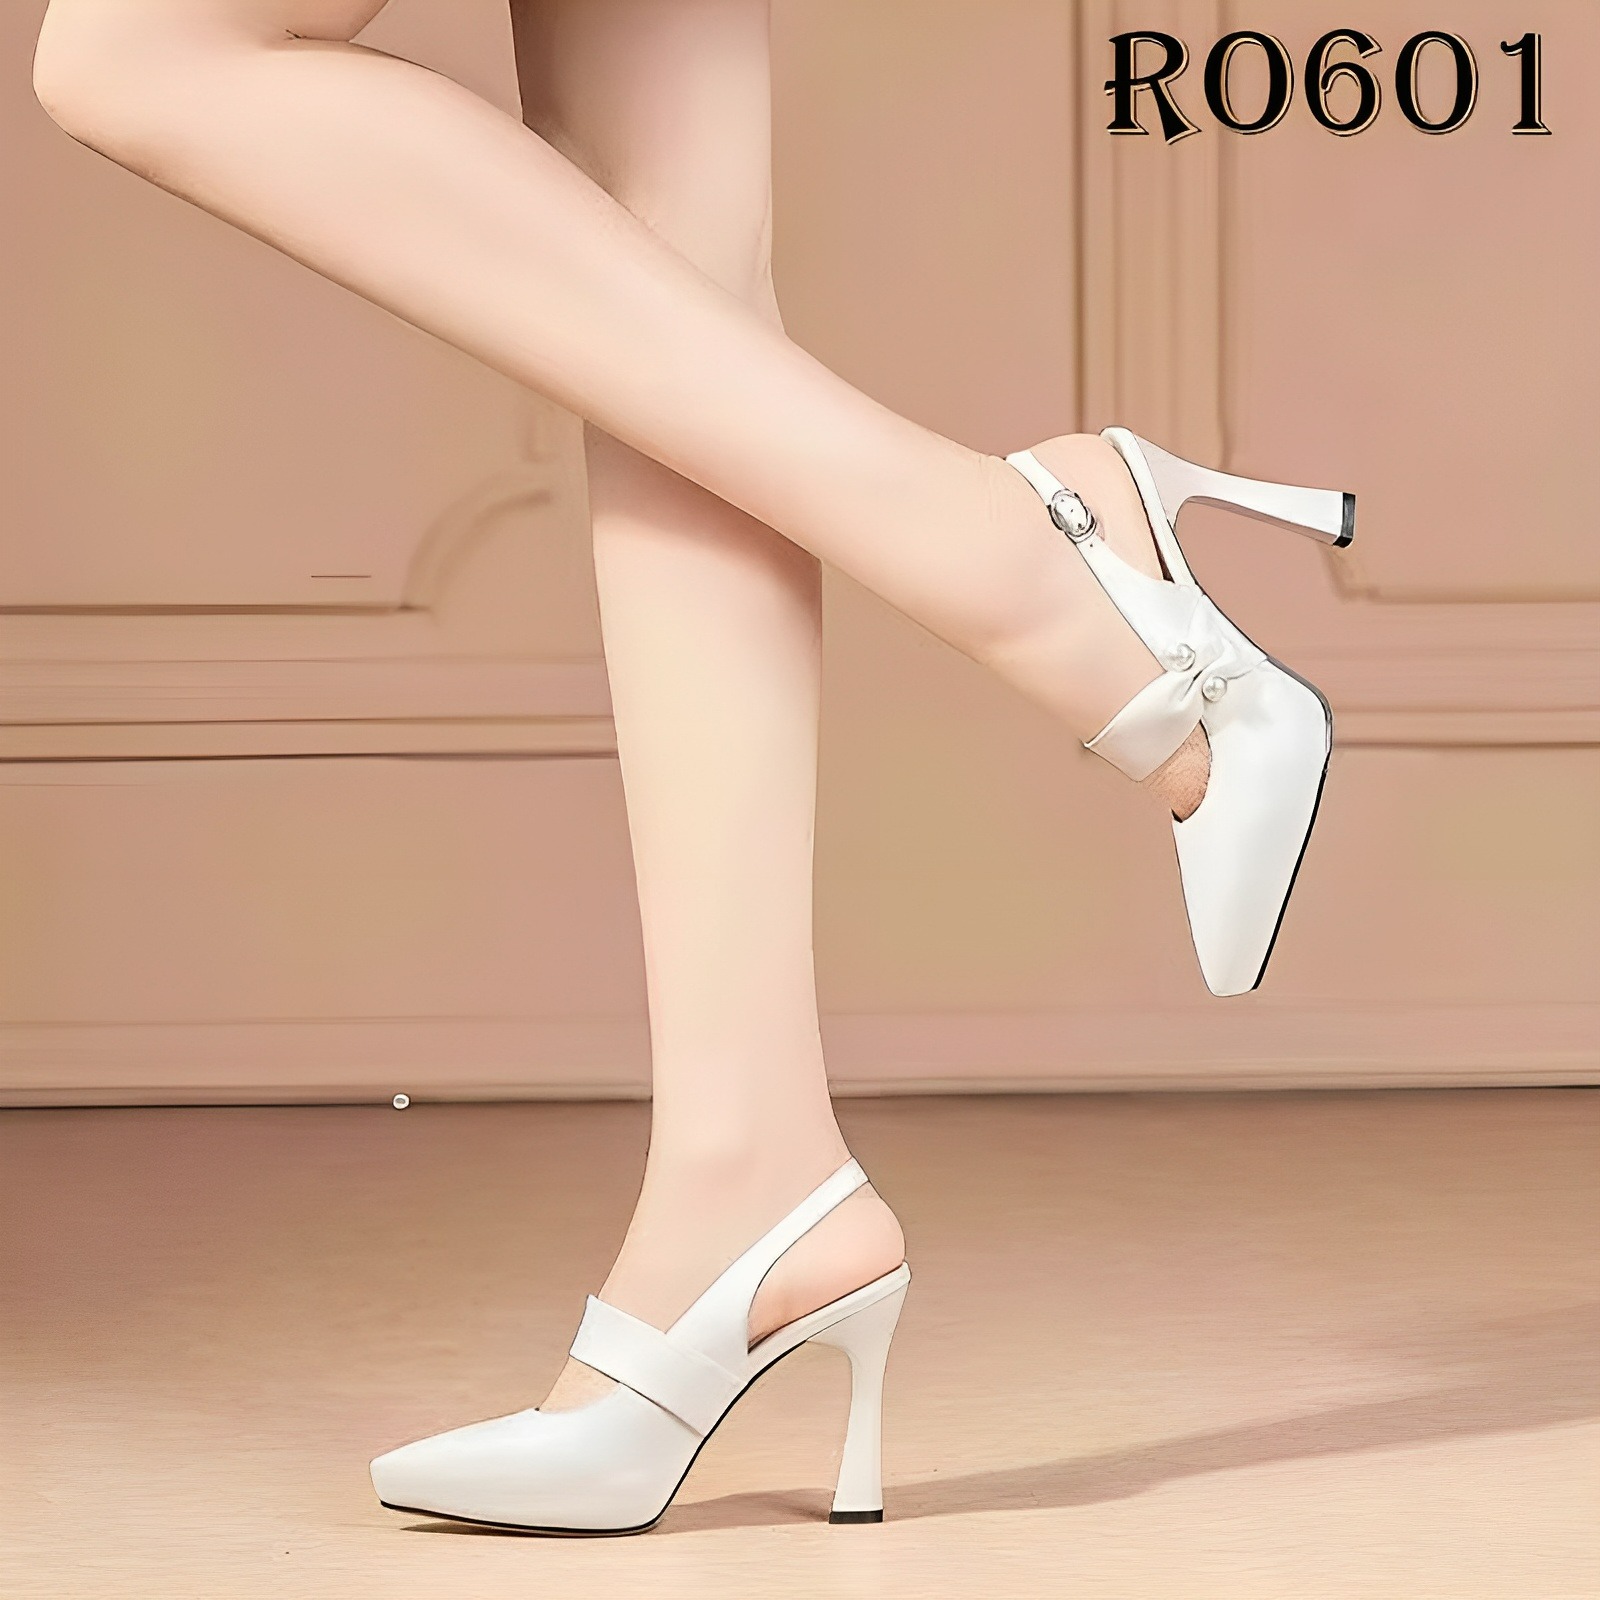 Giày sandal nữ cao gót 9 phân hàng hiệu rosata đẹp hai màu đen trắng ro601